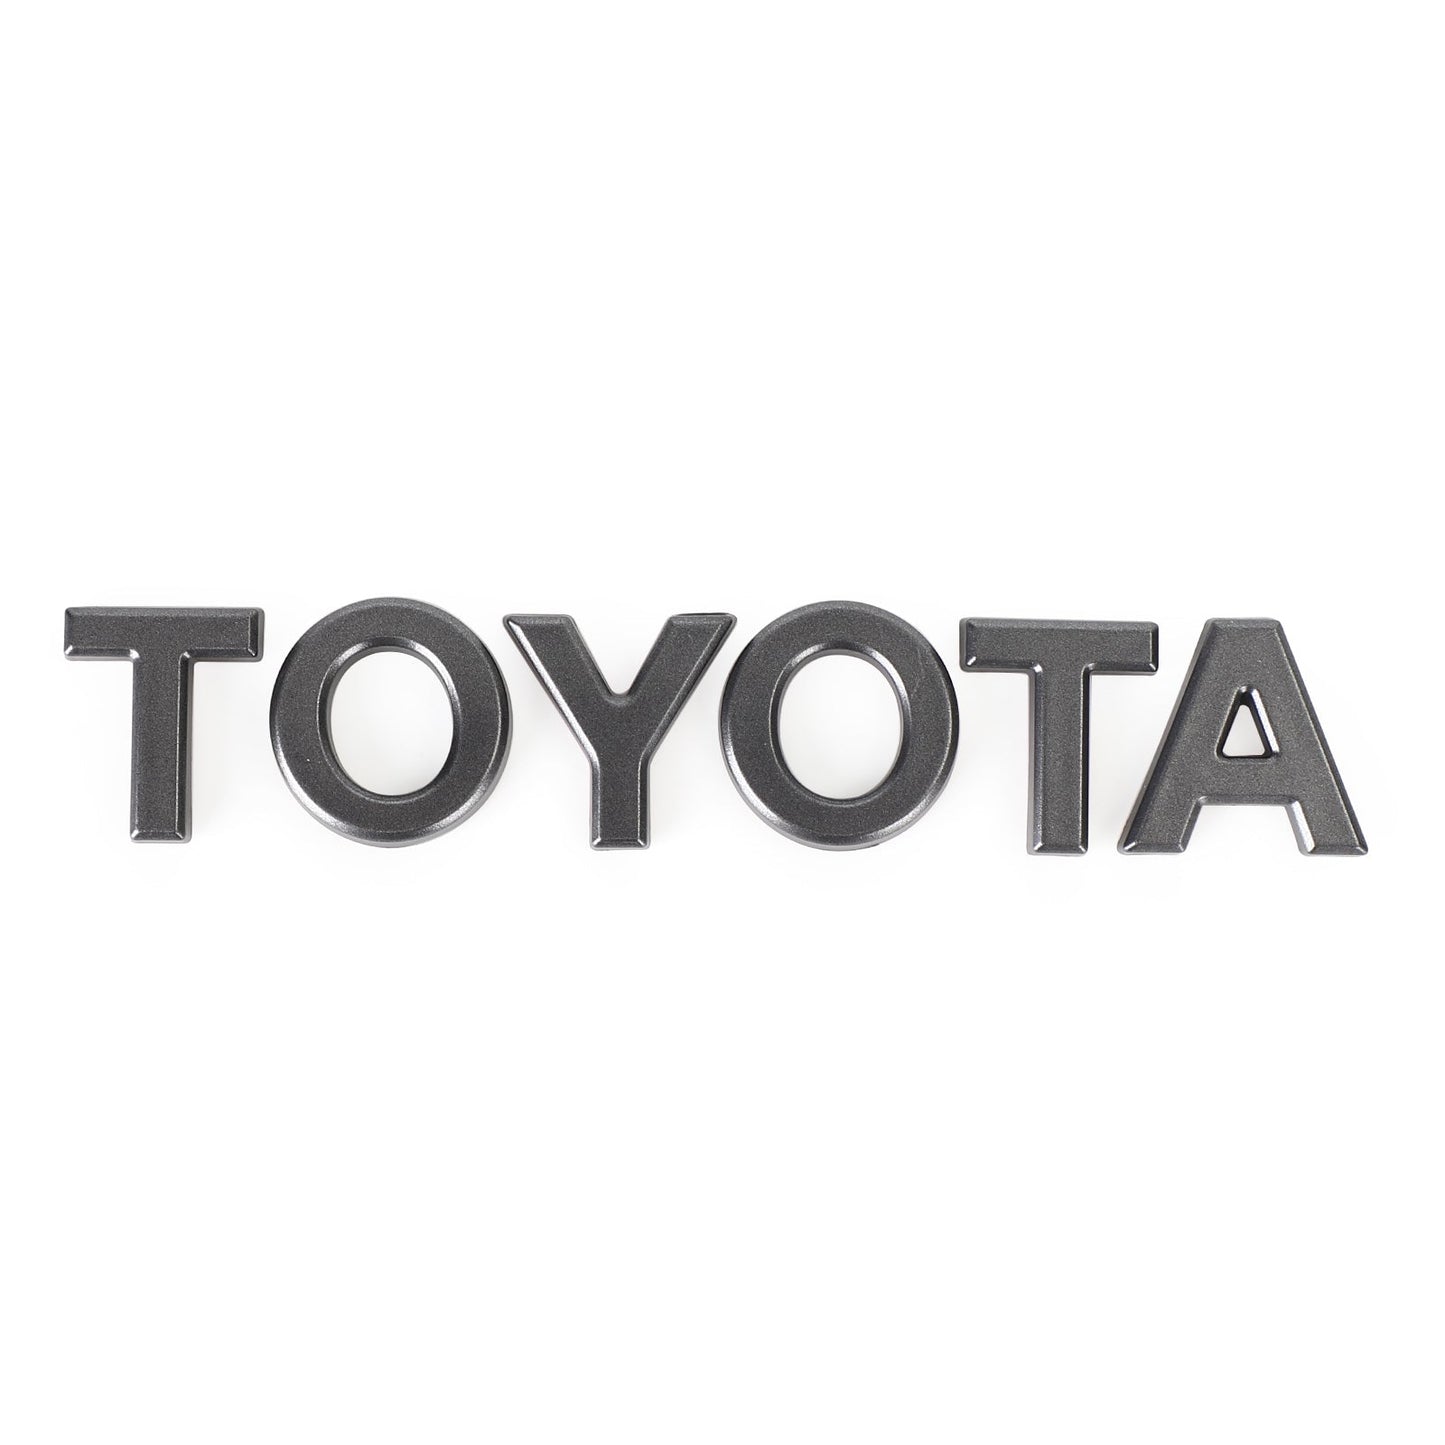 2020-2021-2022-2024 4Runner Toyota TRD Pro Schwarz mit Buchstaben 2 Stück vorderen Stoßstangengrill Grill Generisches